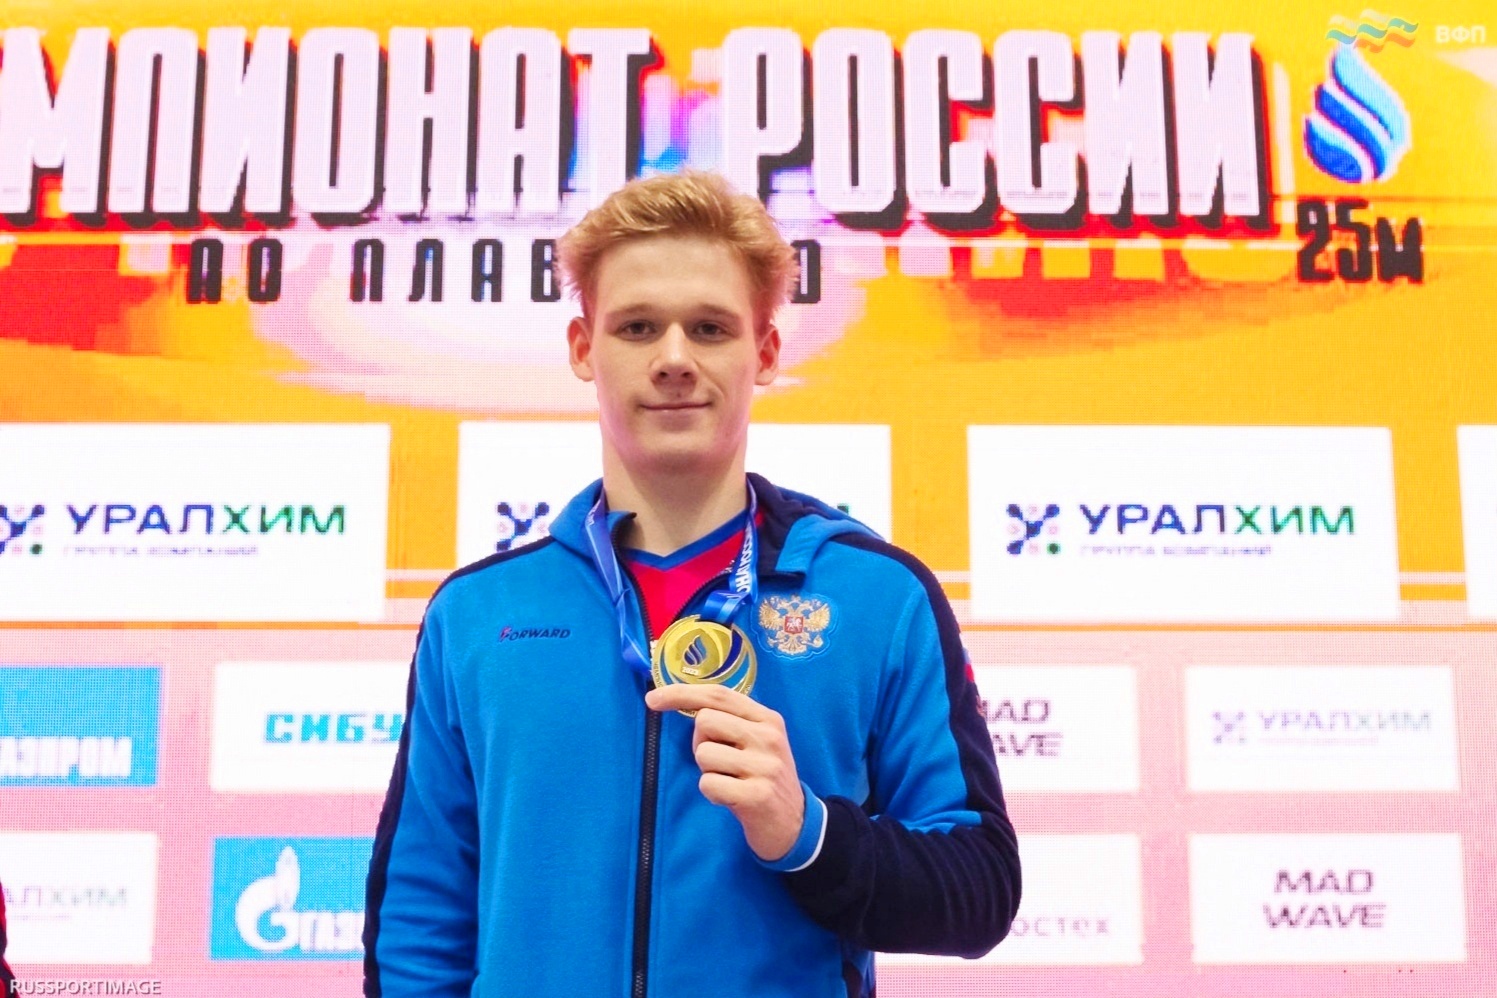 Пловец из Рыбинска установил новый рекорд России